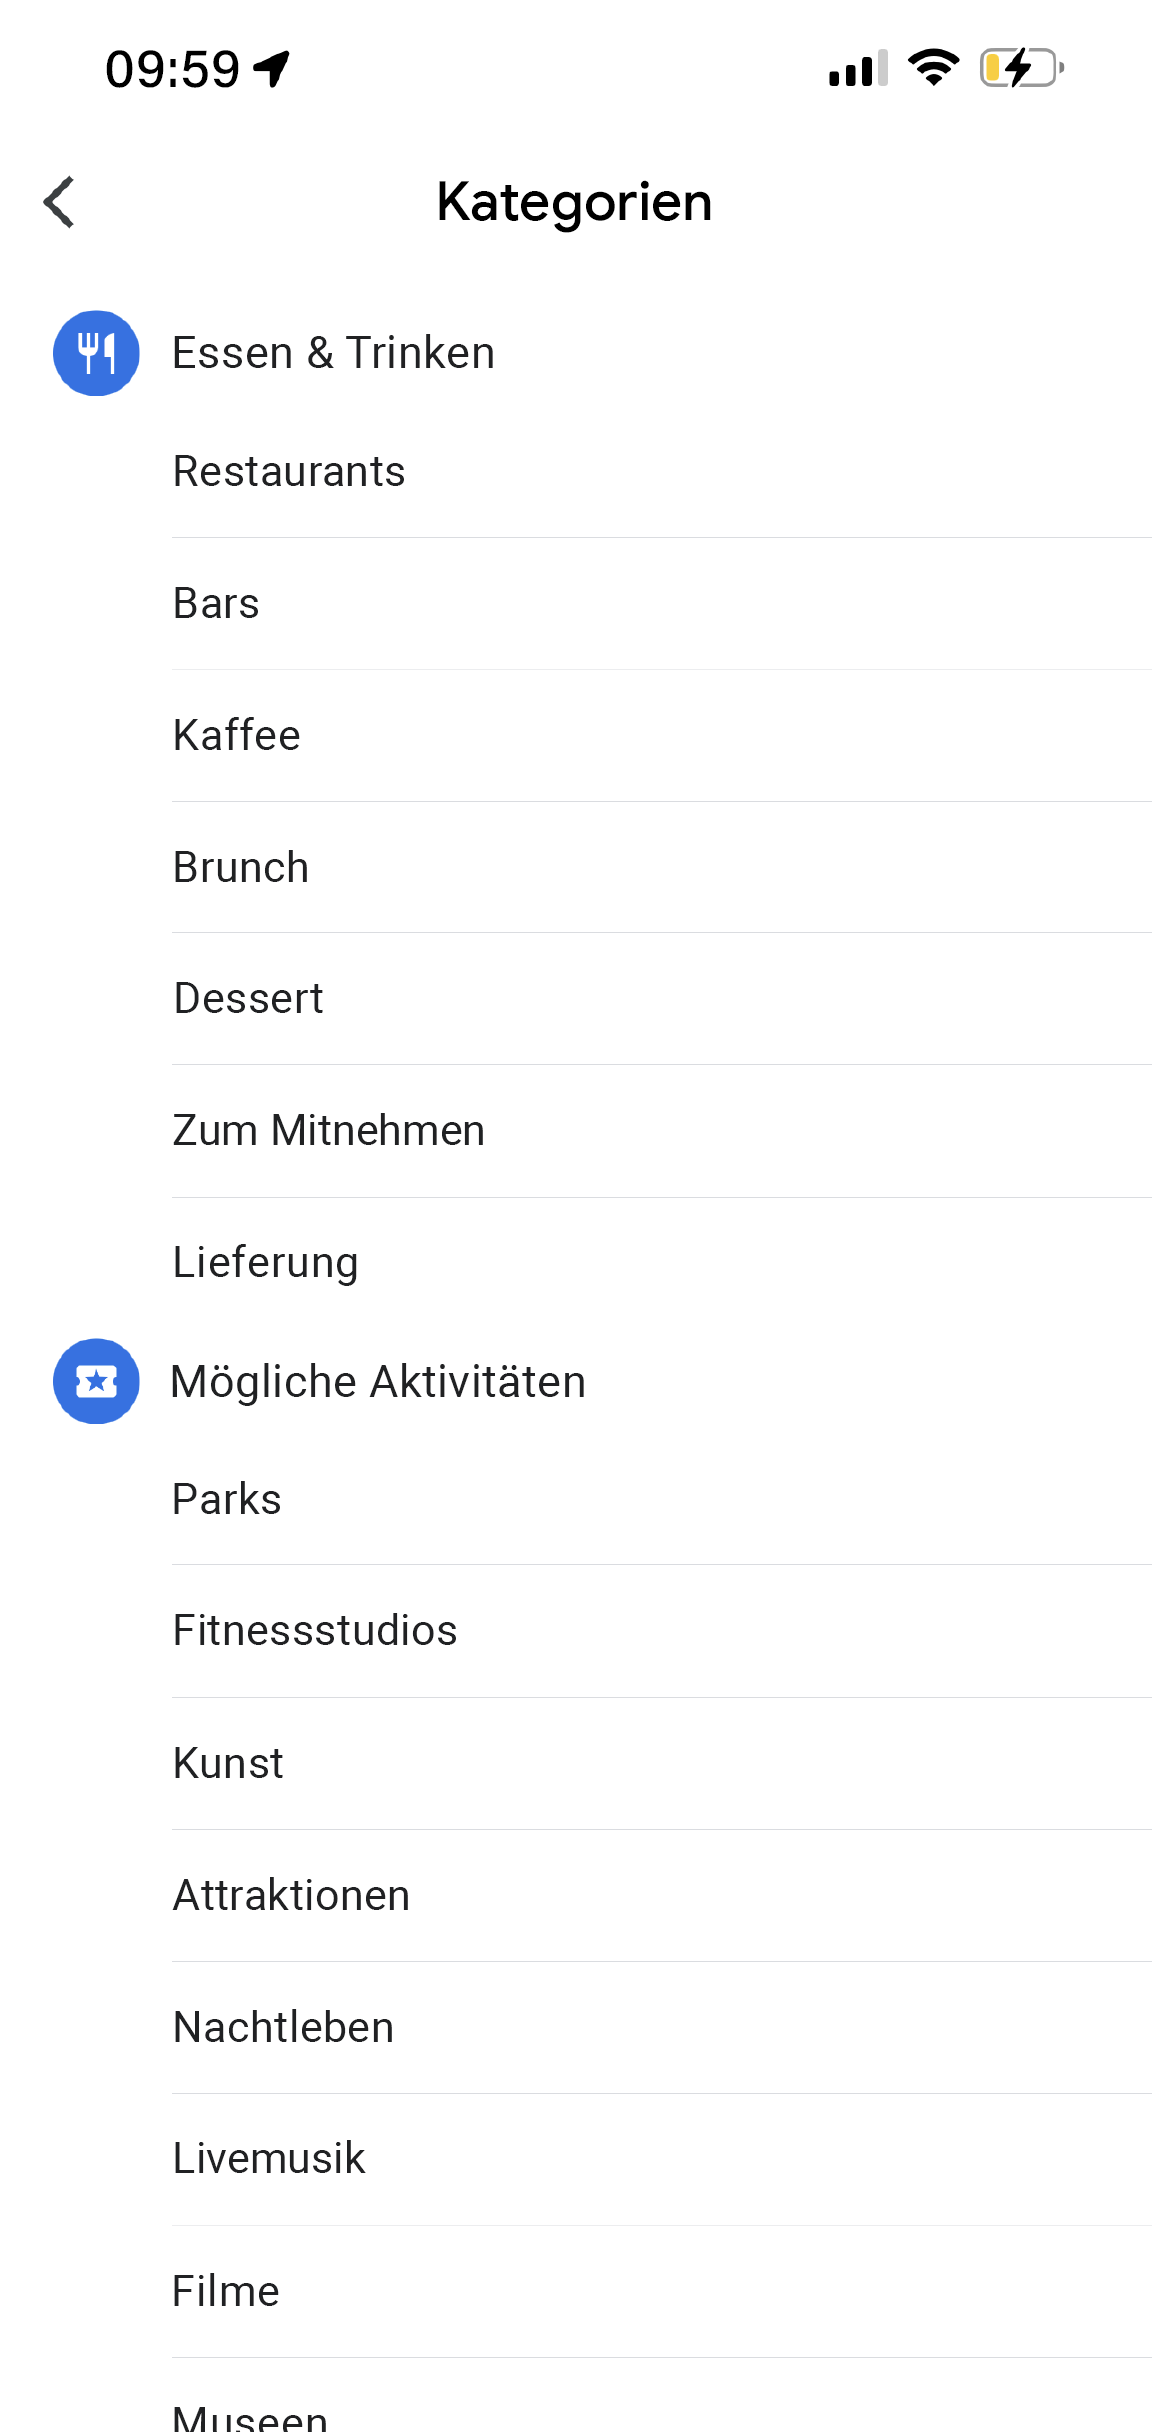 In der Google Maps App ist der Seitentitel „Mehr Kategorien“ zu sehen. Unter den Kategorien wie „Essen & Trinken“, „Mögliche Aktivitäten“ und „Einkaufen“ werden jeweils weitere Unterkategorien angezeigt, die ausgewählt werden können.